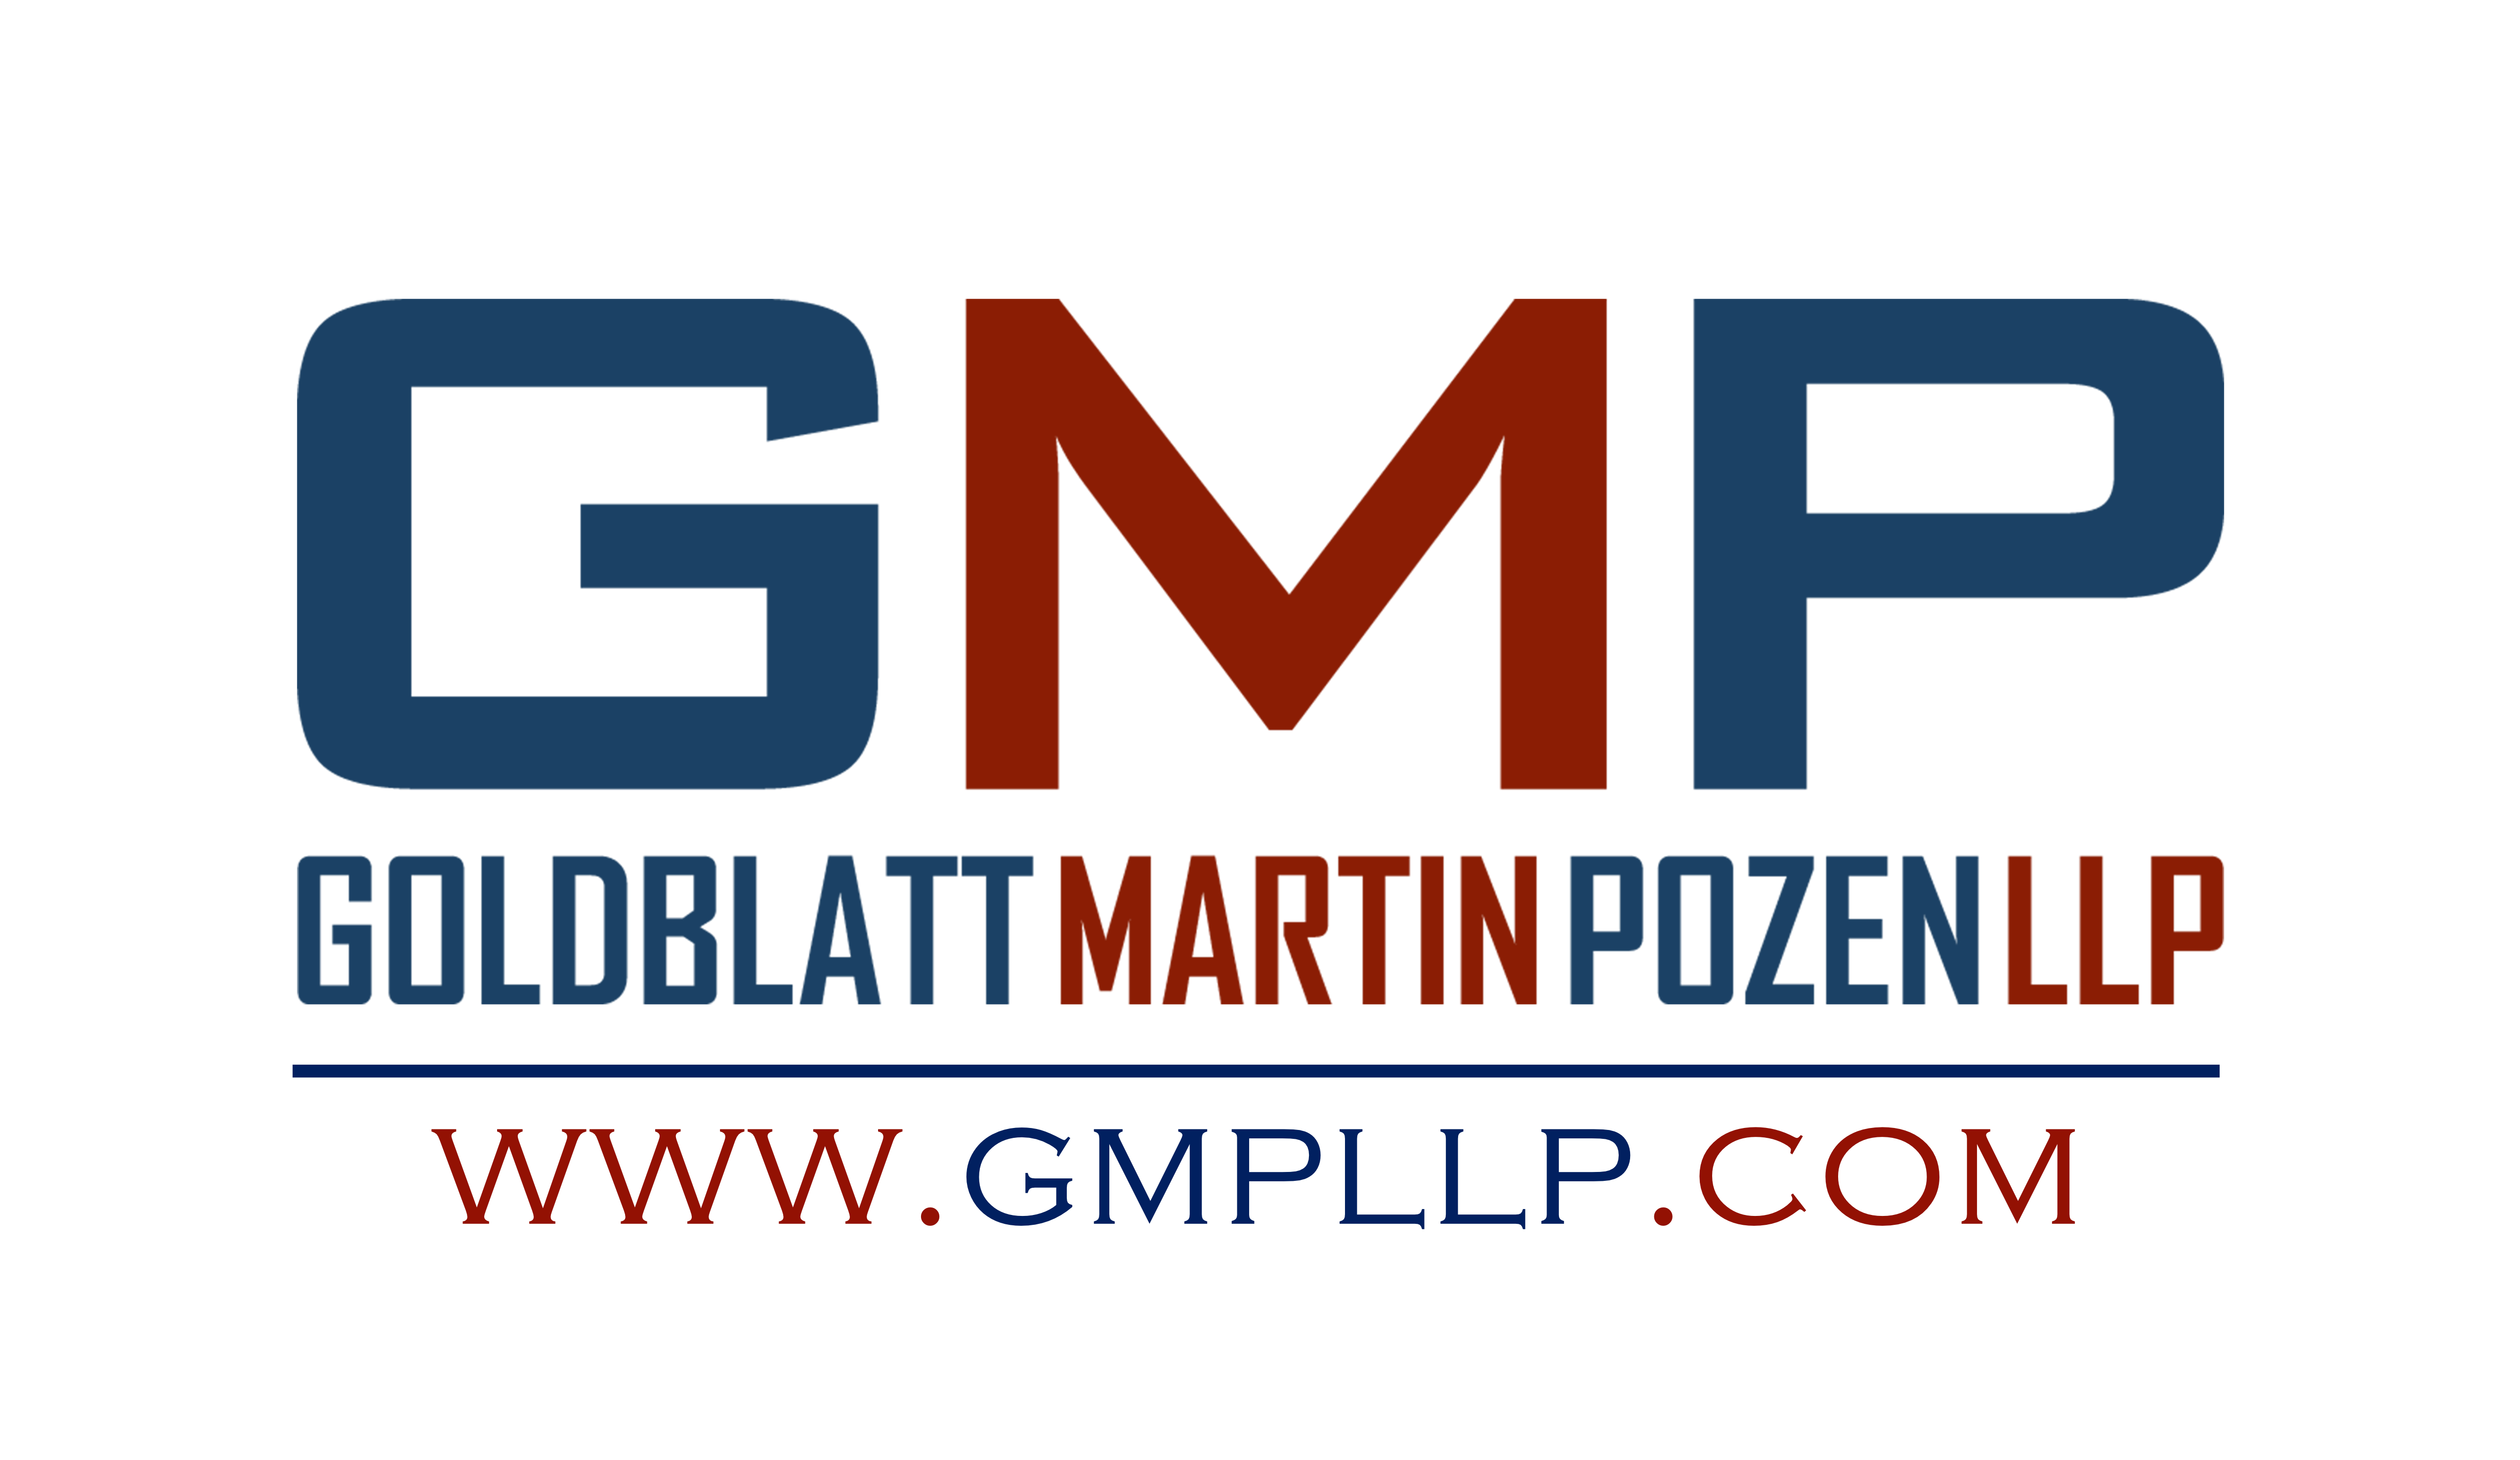 GMP LLC